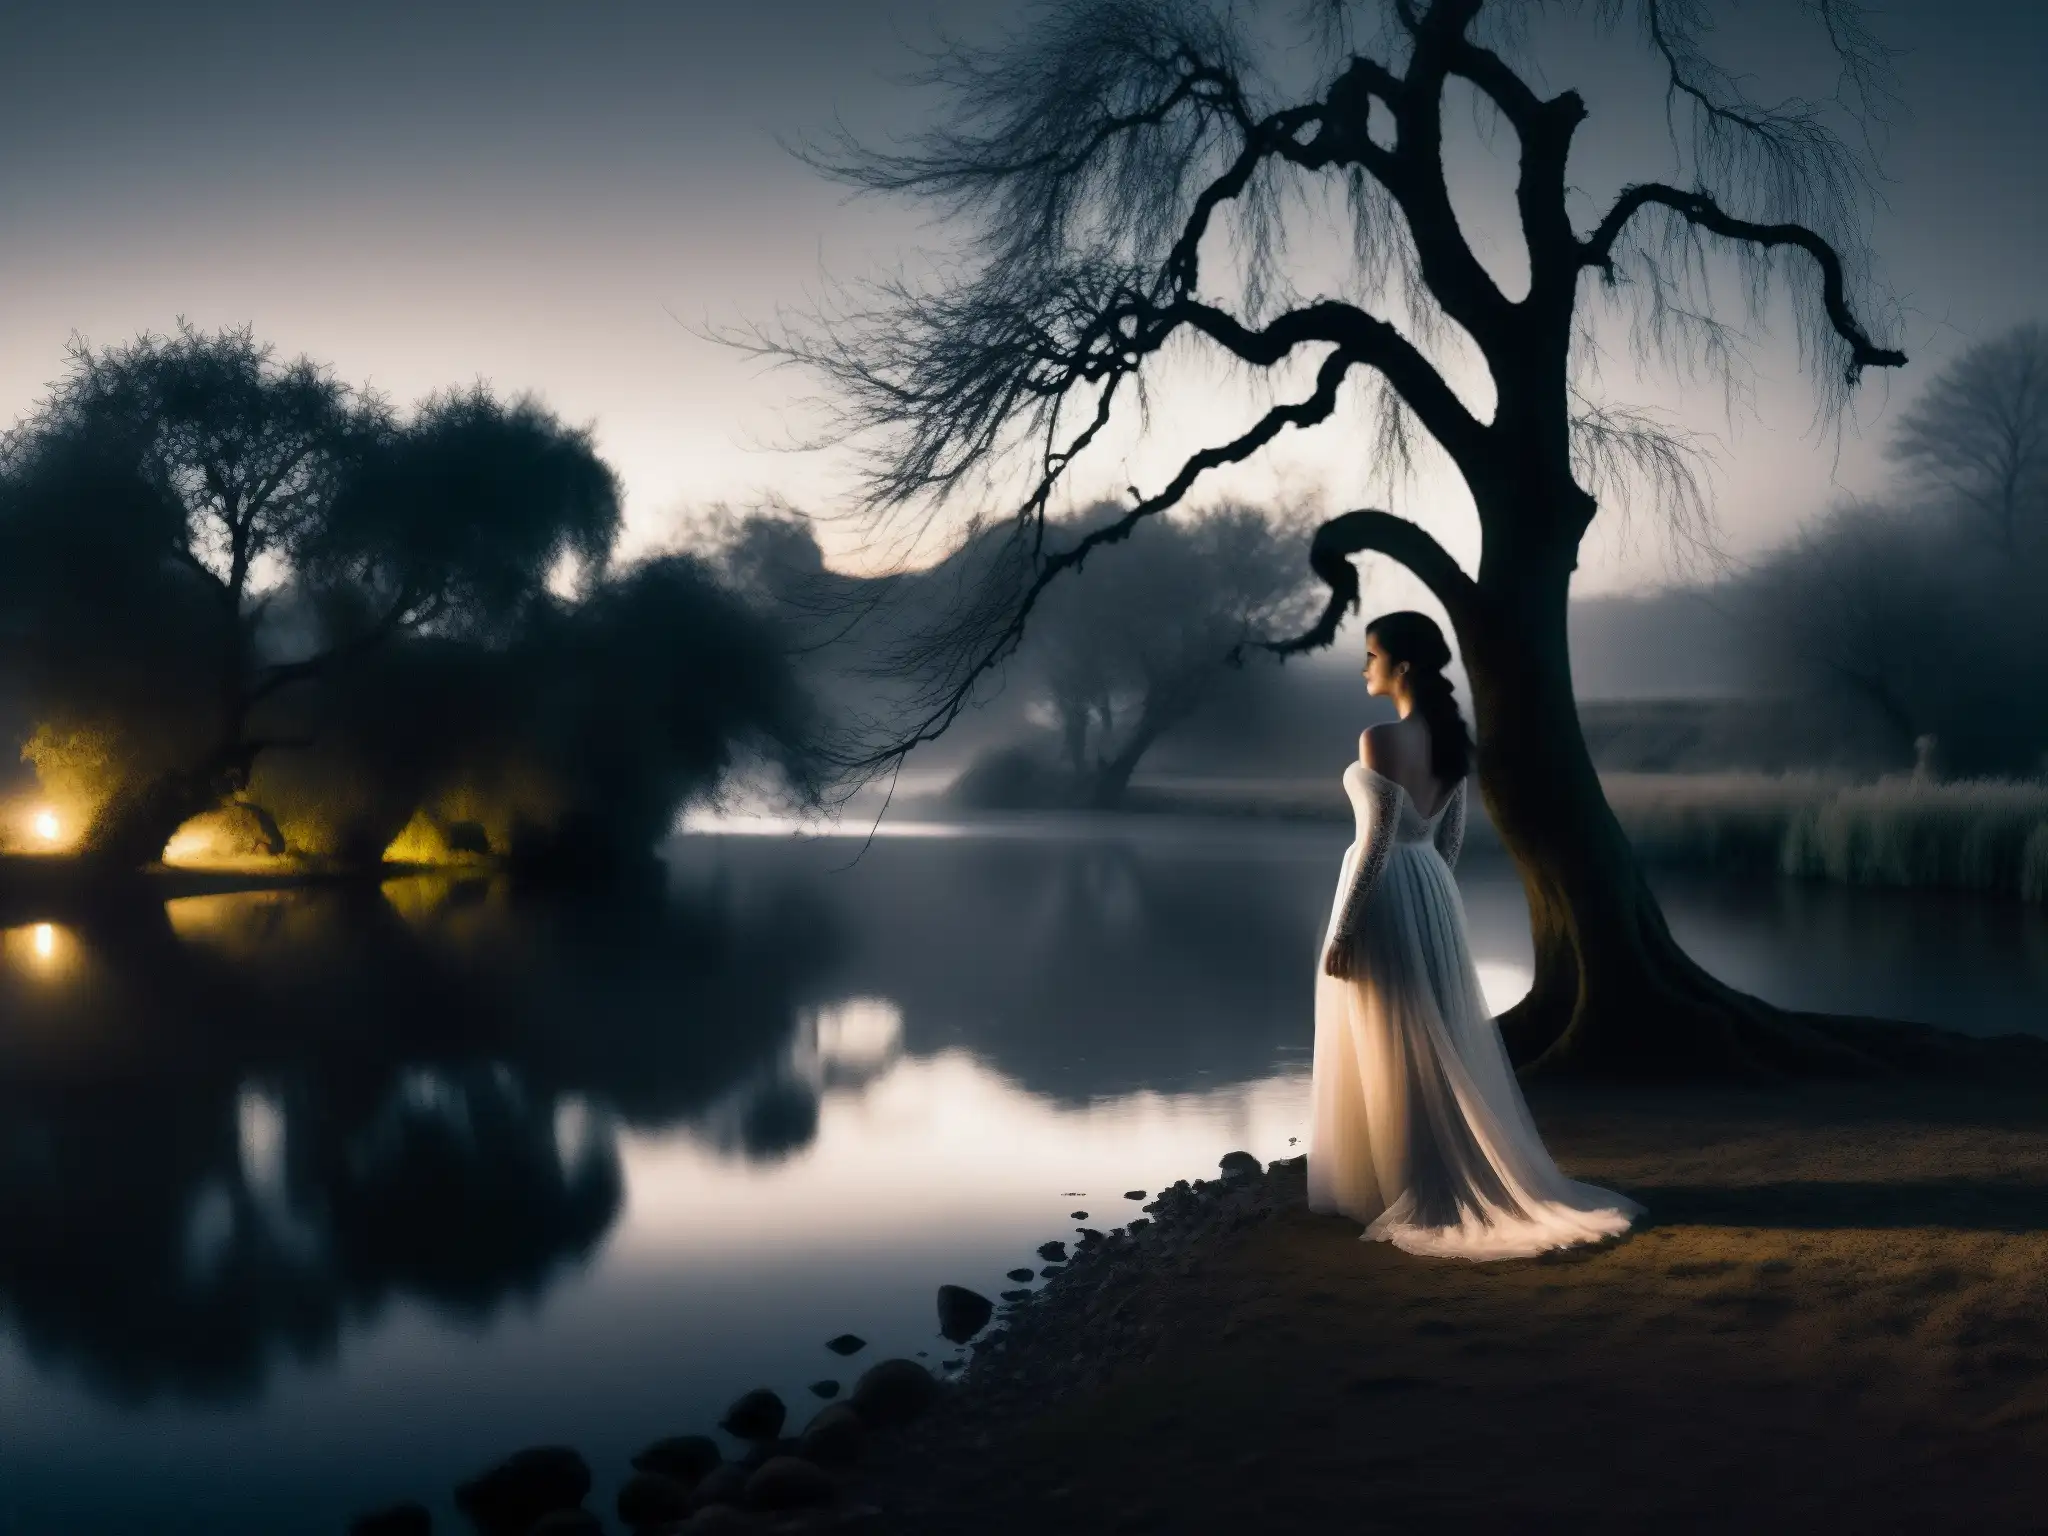 Una figura en la oscuridad junto al río, rodeada de misterio y melancolía